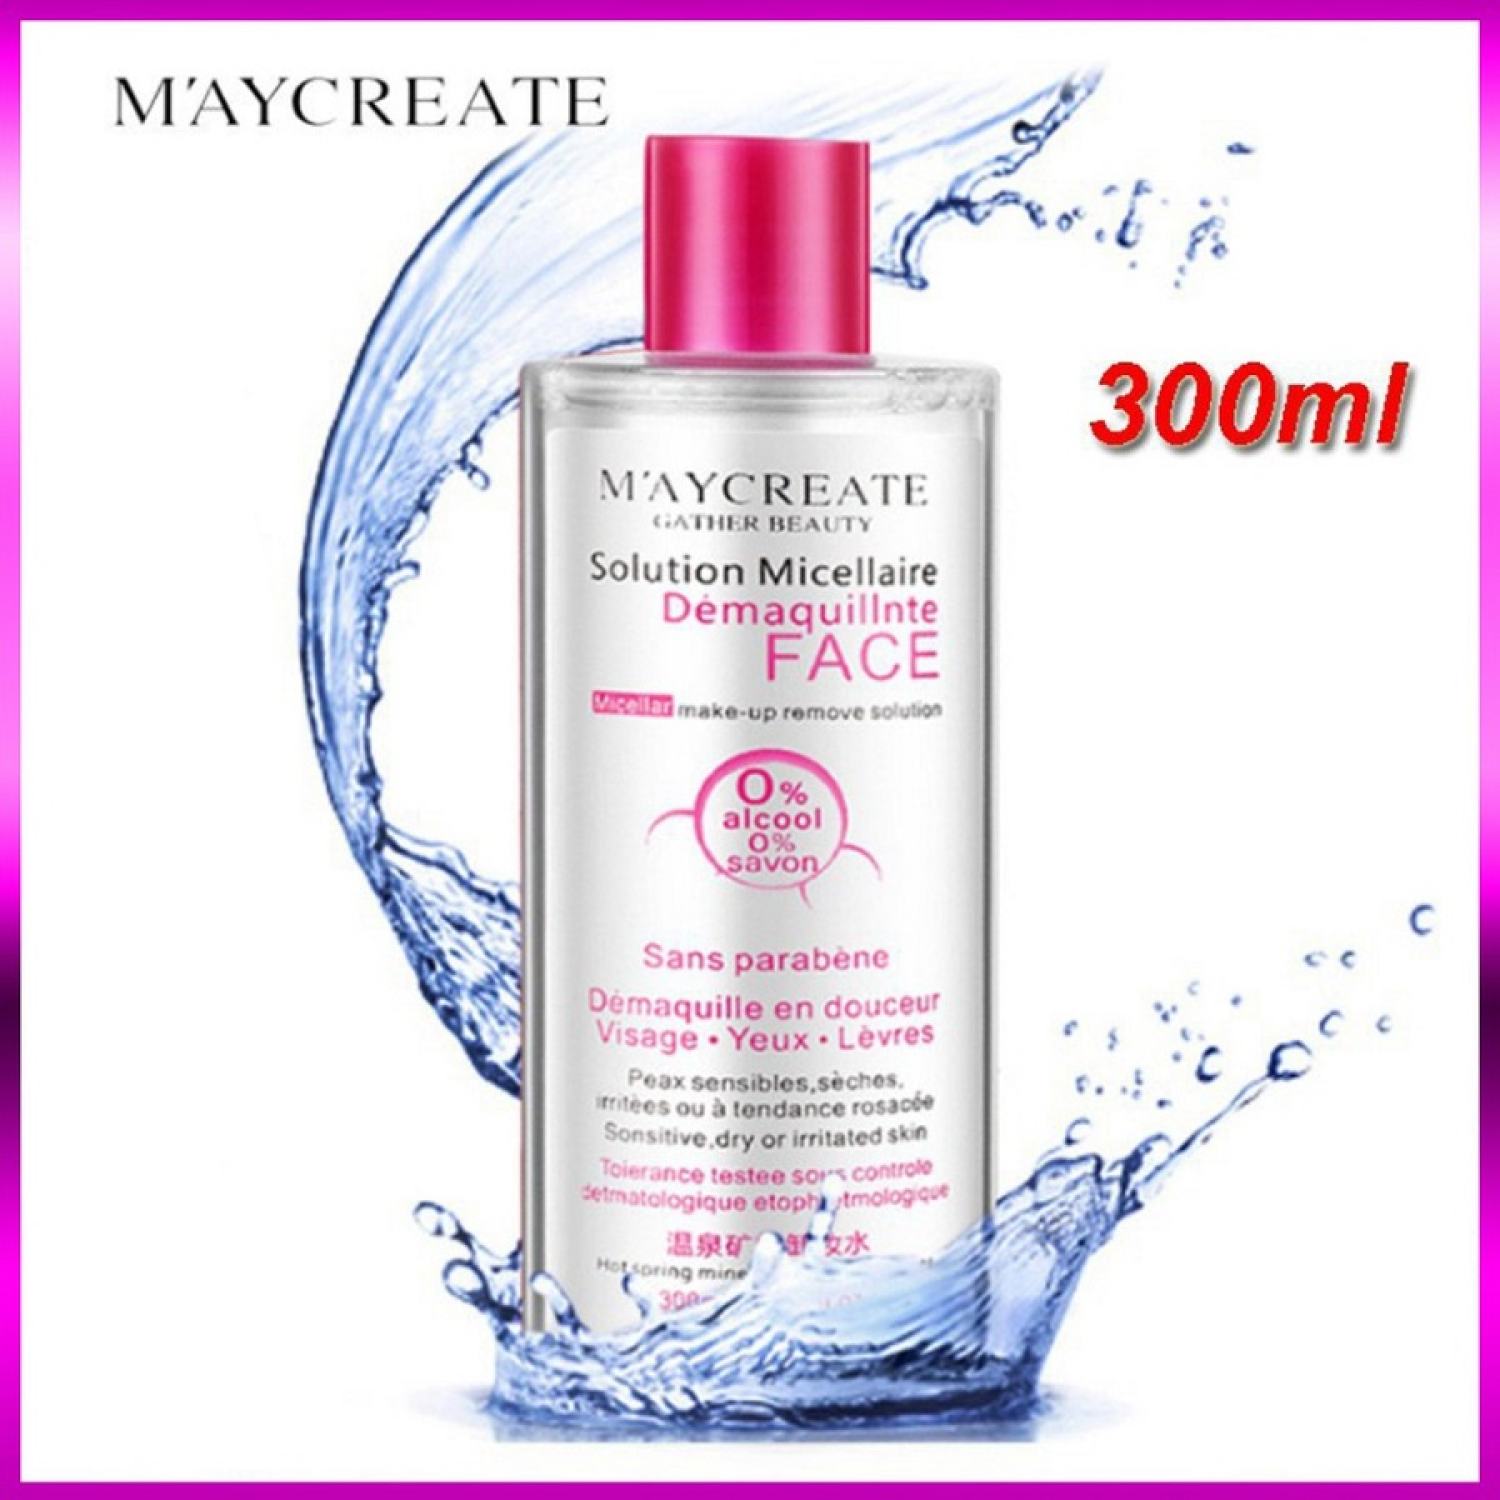 Nước tẩy trang Maycreate Gather Beauty chai nắp hồng 300ml